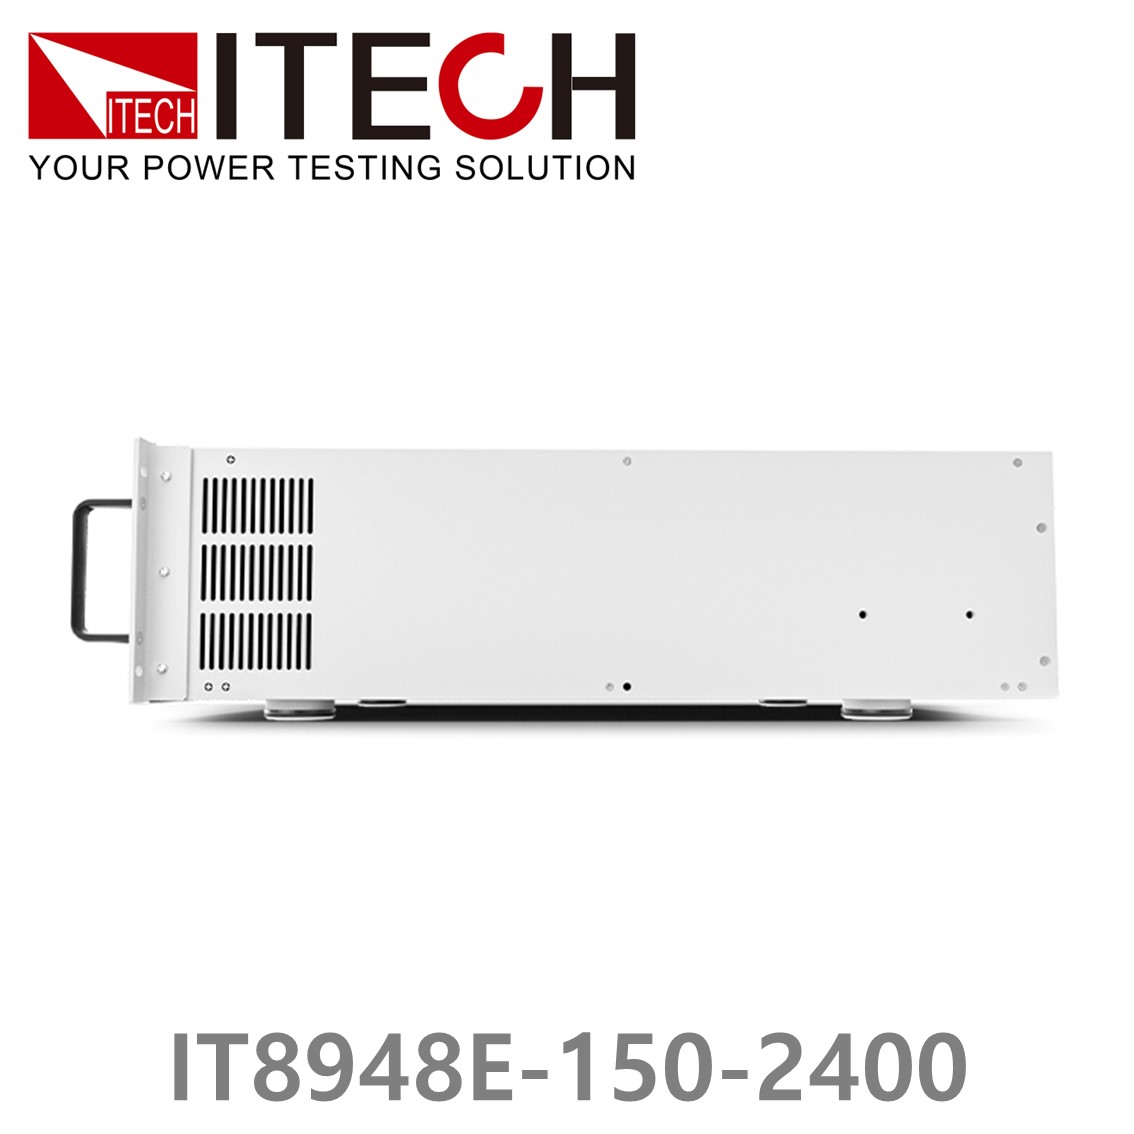 [ ITECH ] IT8948E-150-2400  고성능 고전력 DC 전자로드 150V/2400A/48kW (37U)